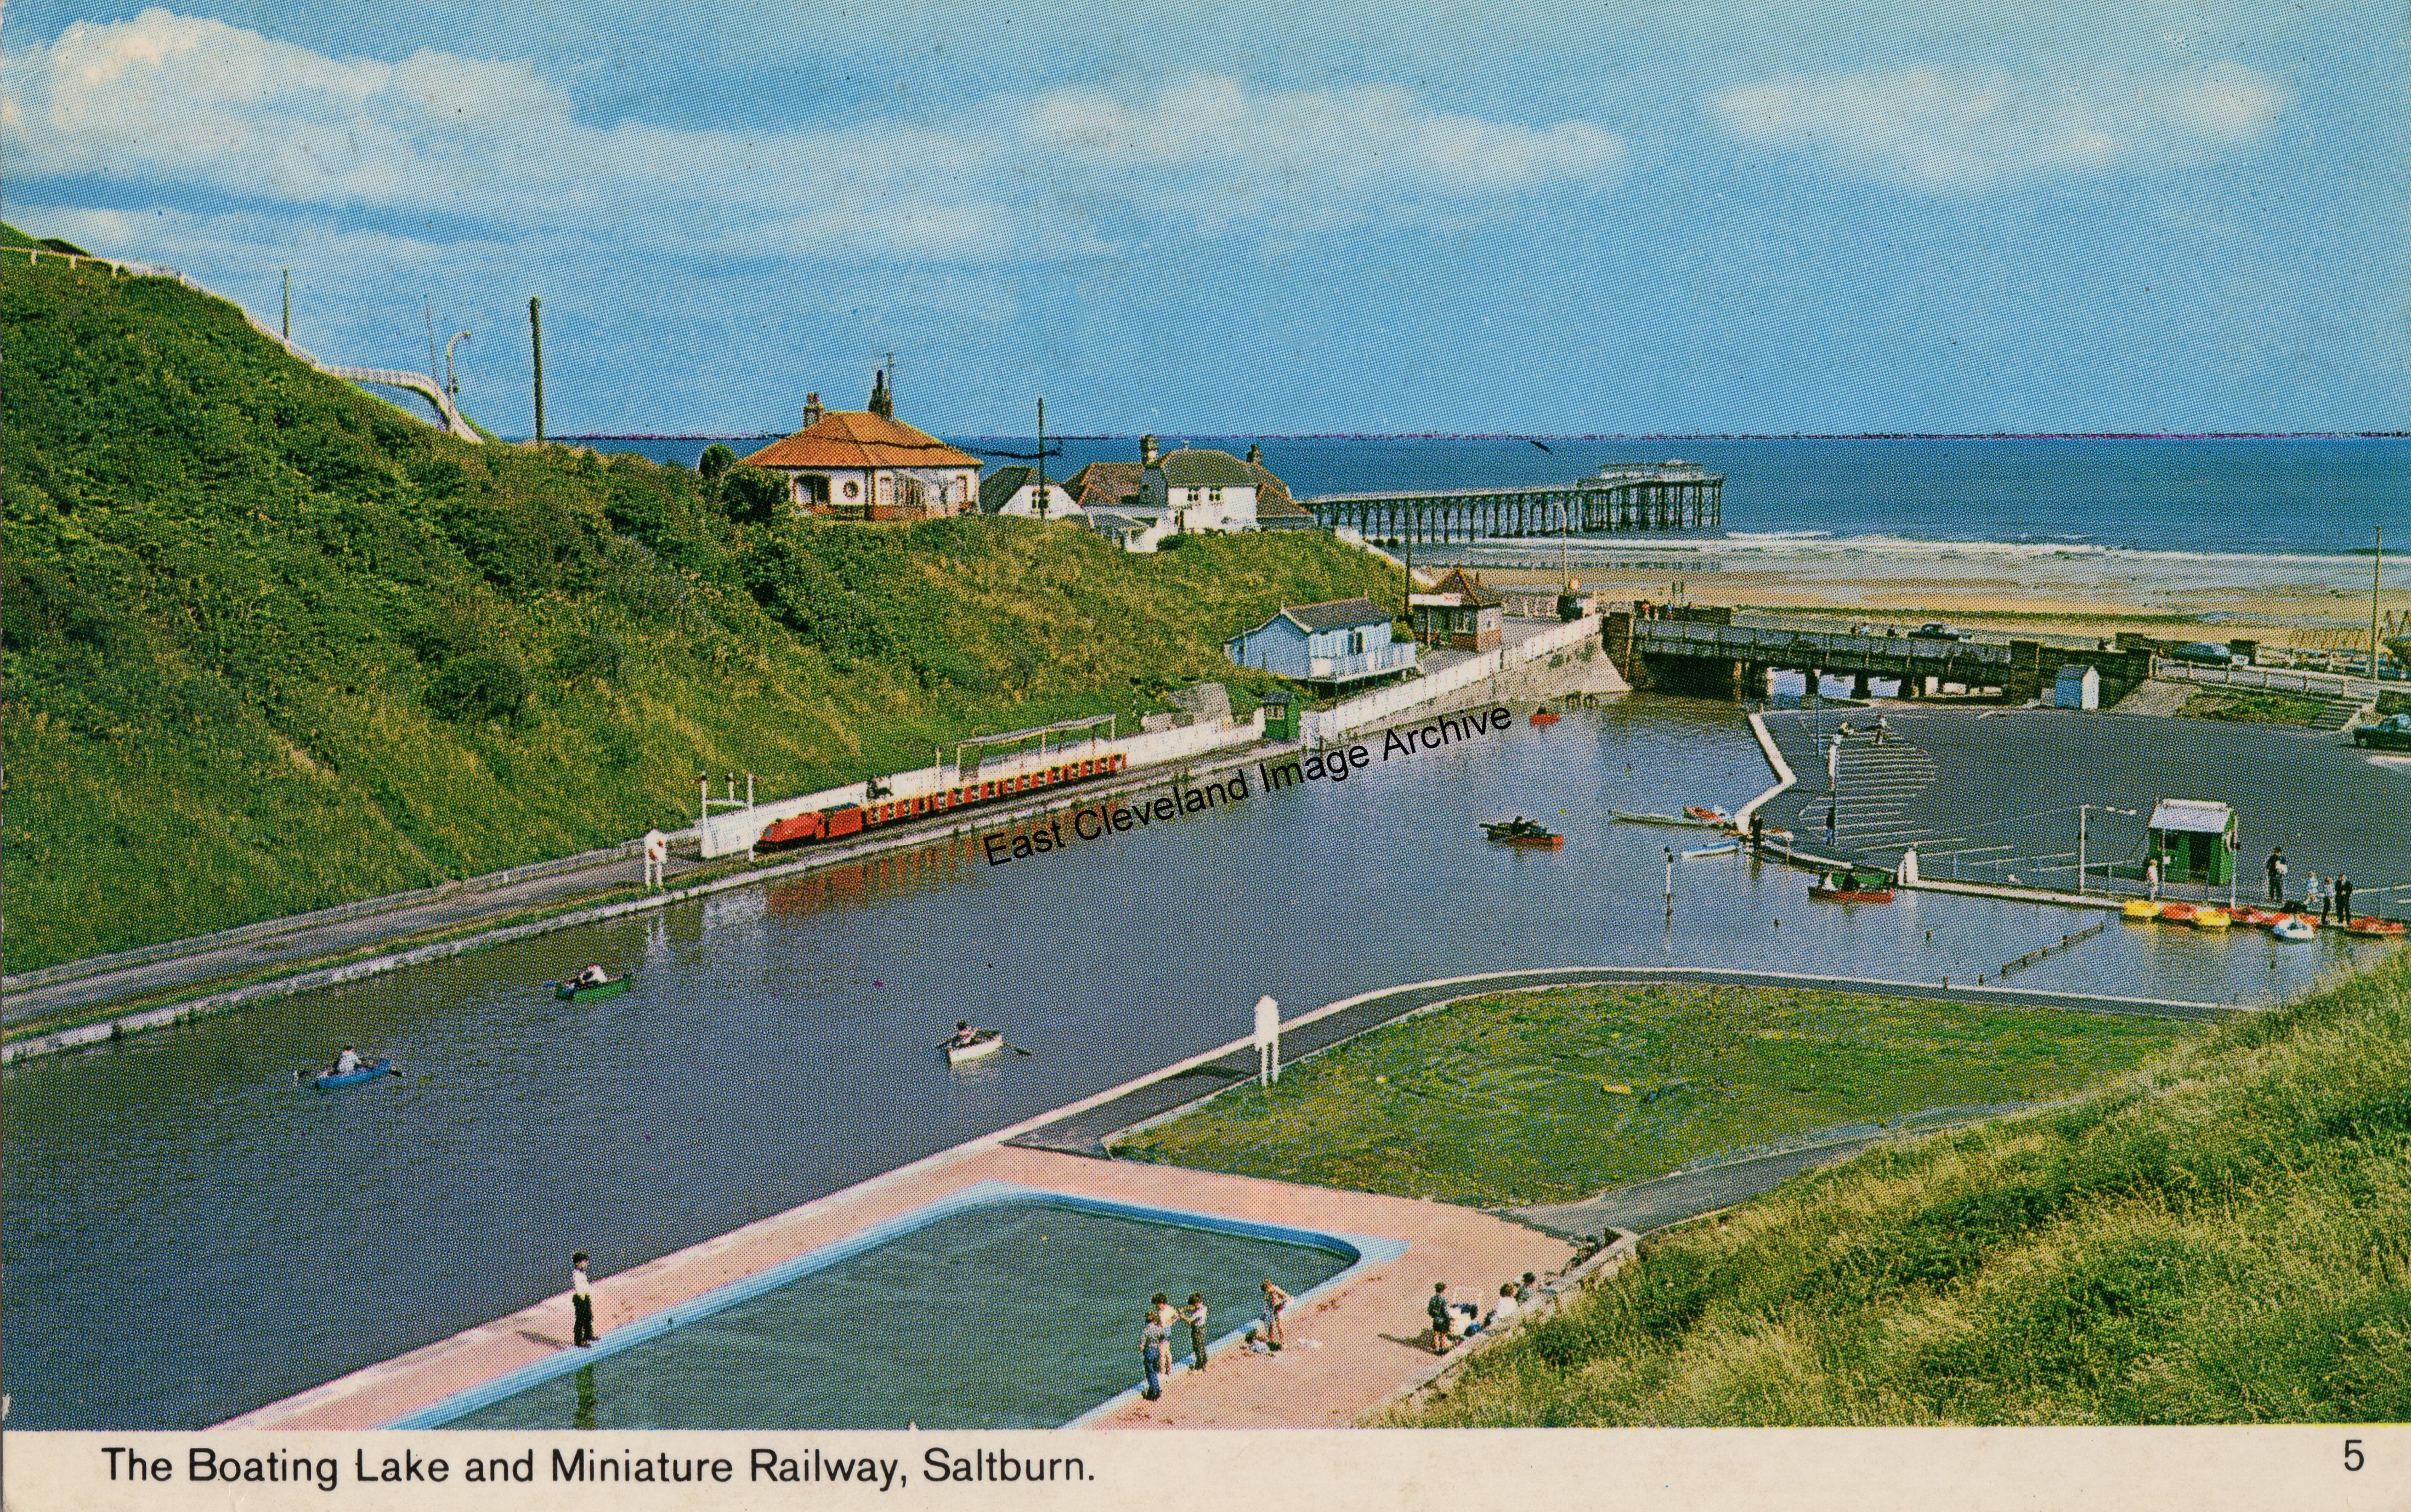 Saltburn paddling pool and miniature railway.